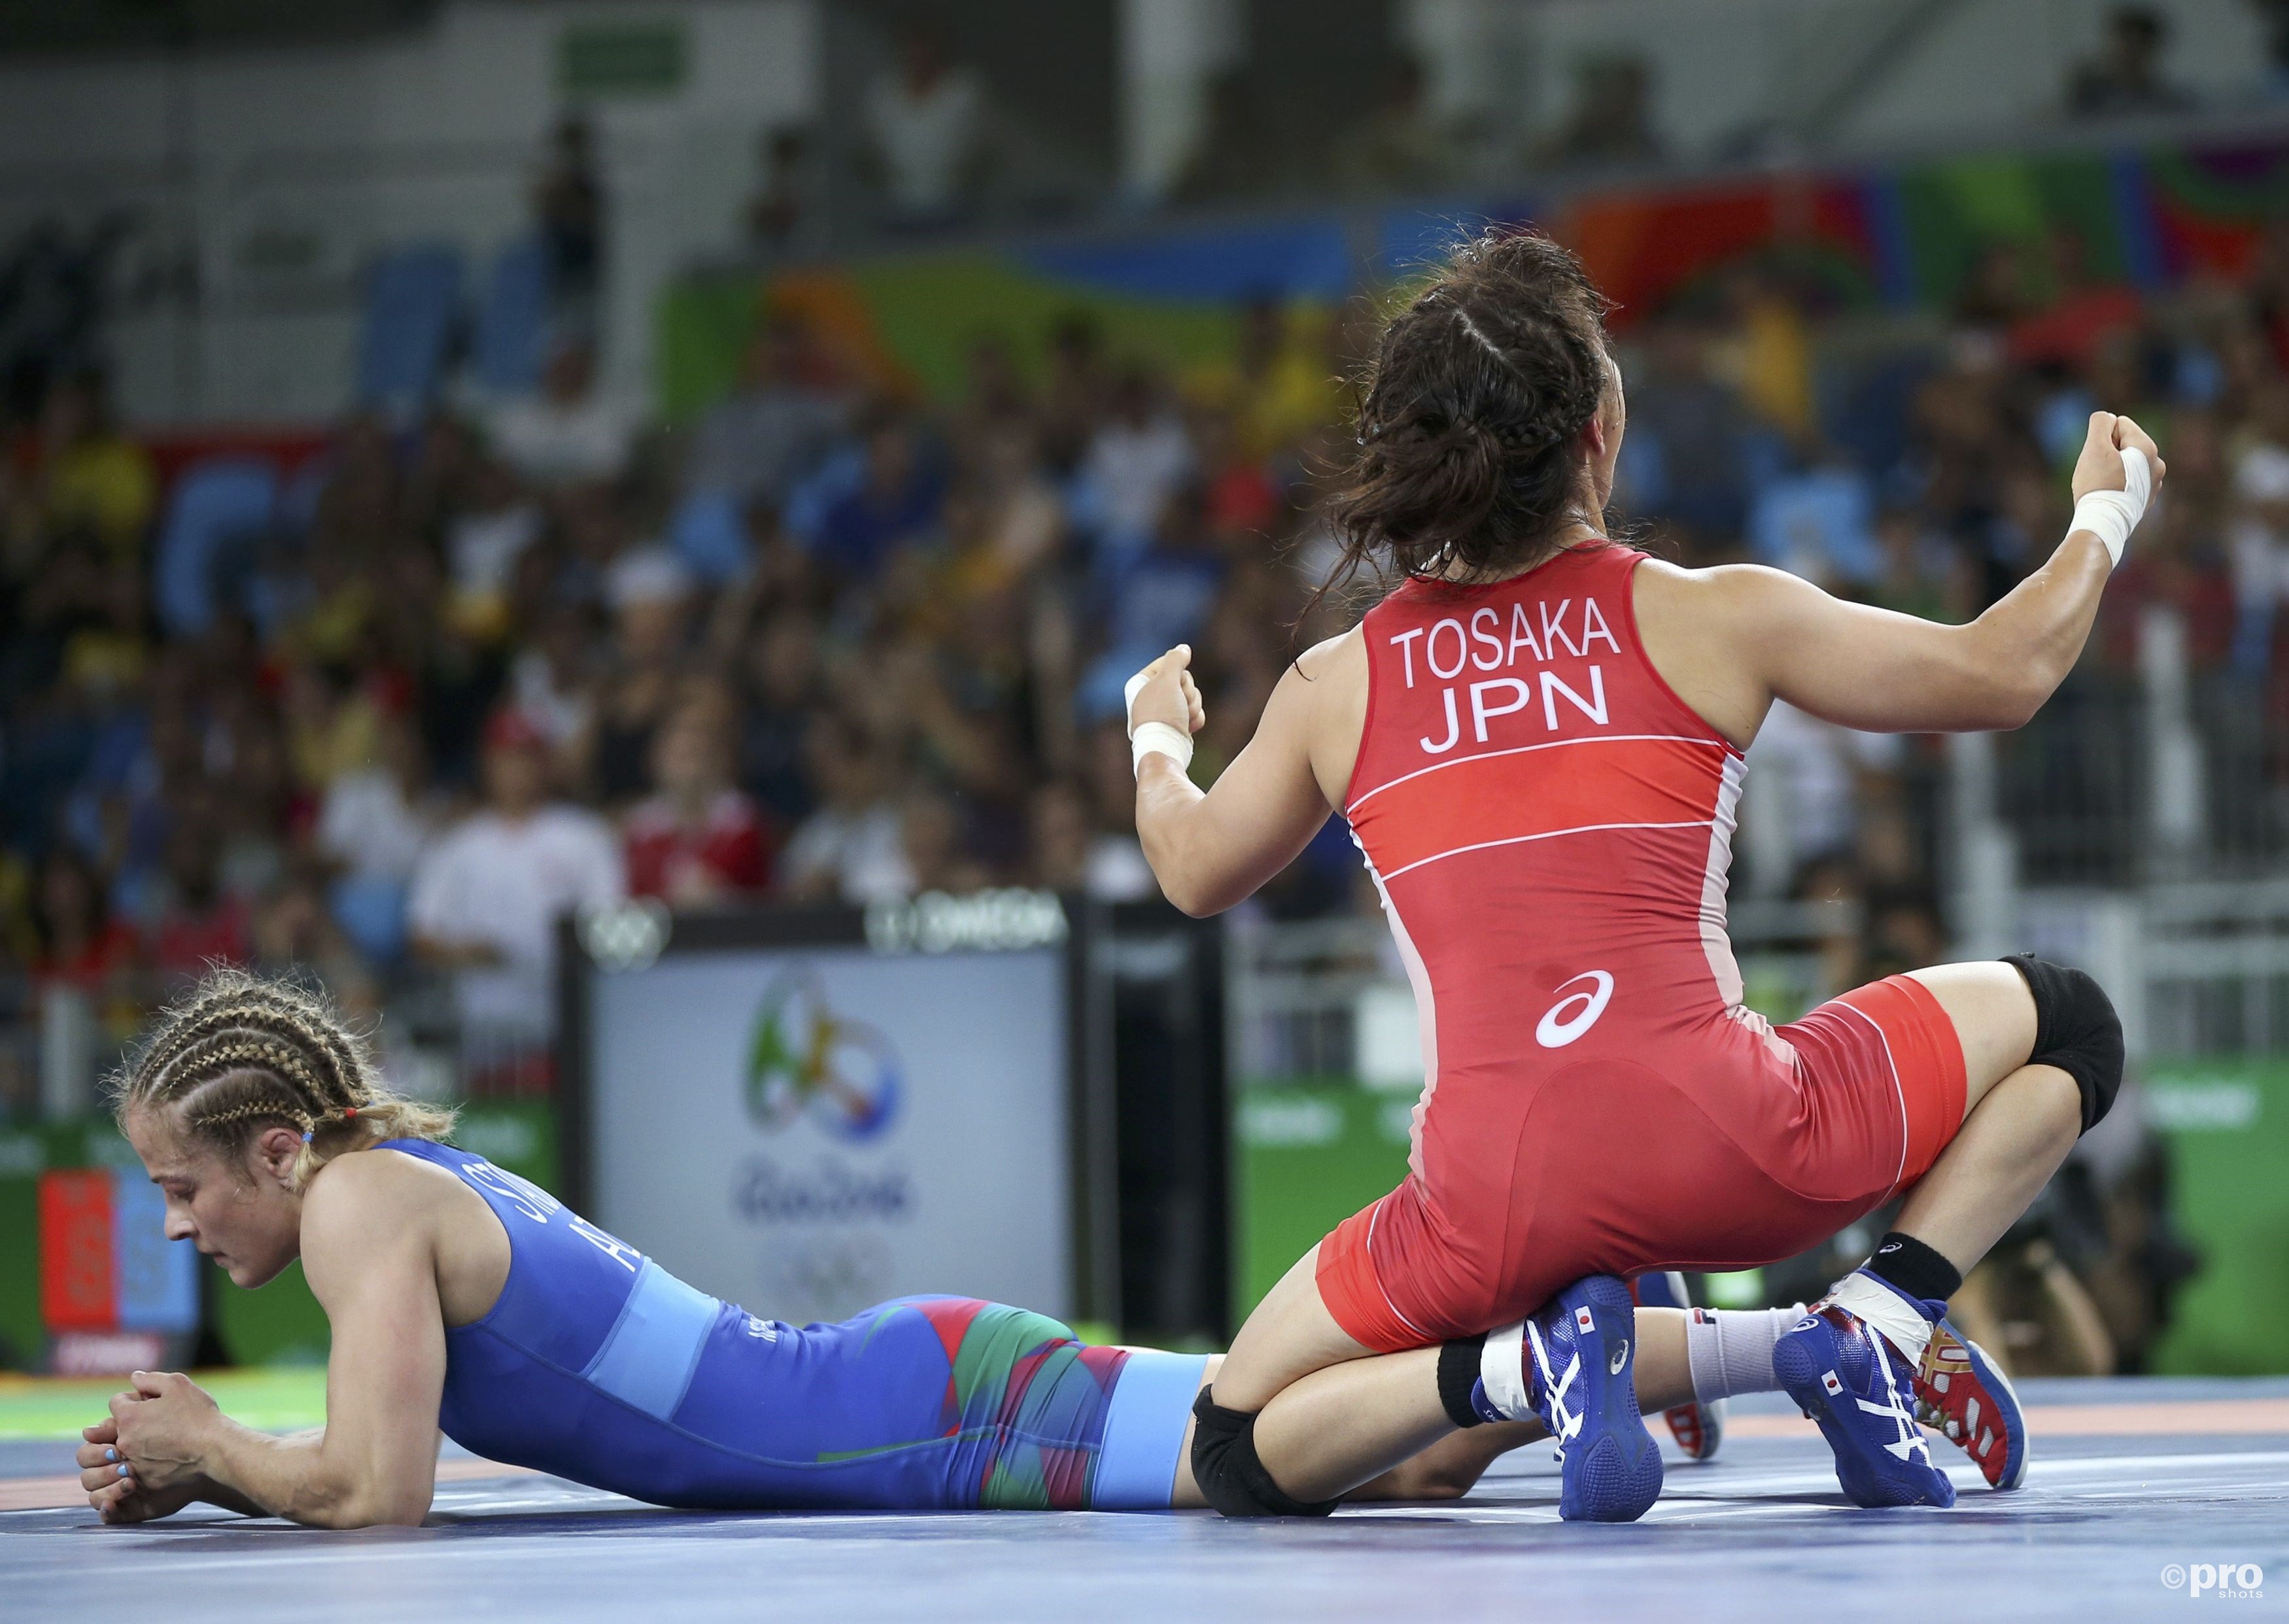 Stadnik kan niet geloven dat ze het goud nog uit handen heeft gegeven (PROSHOTS/Action Images)